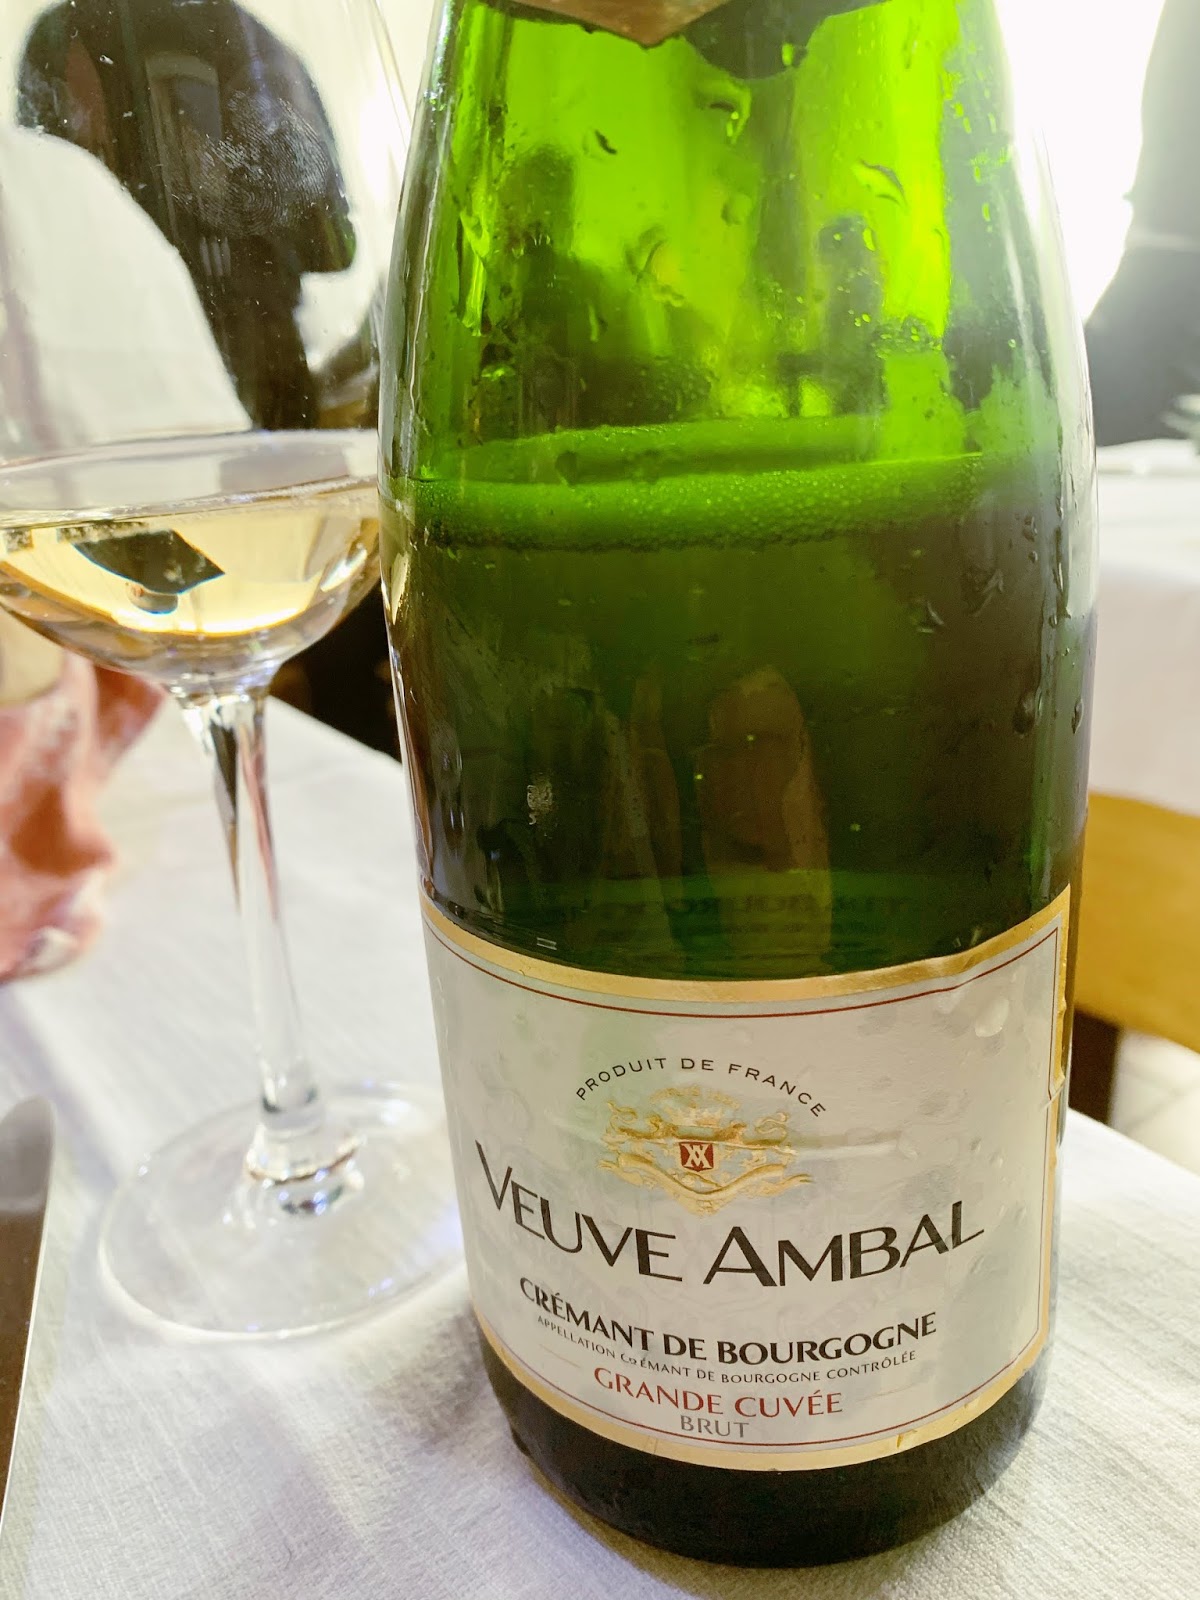 Rượu Sâm Panh Veuve Ambal Crémant De Bourgogne Grande Cuvee Blanc mang hương vị độc đáo tạo cho người thưởng thức cảm giác sảng khoái